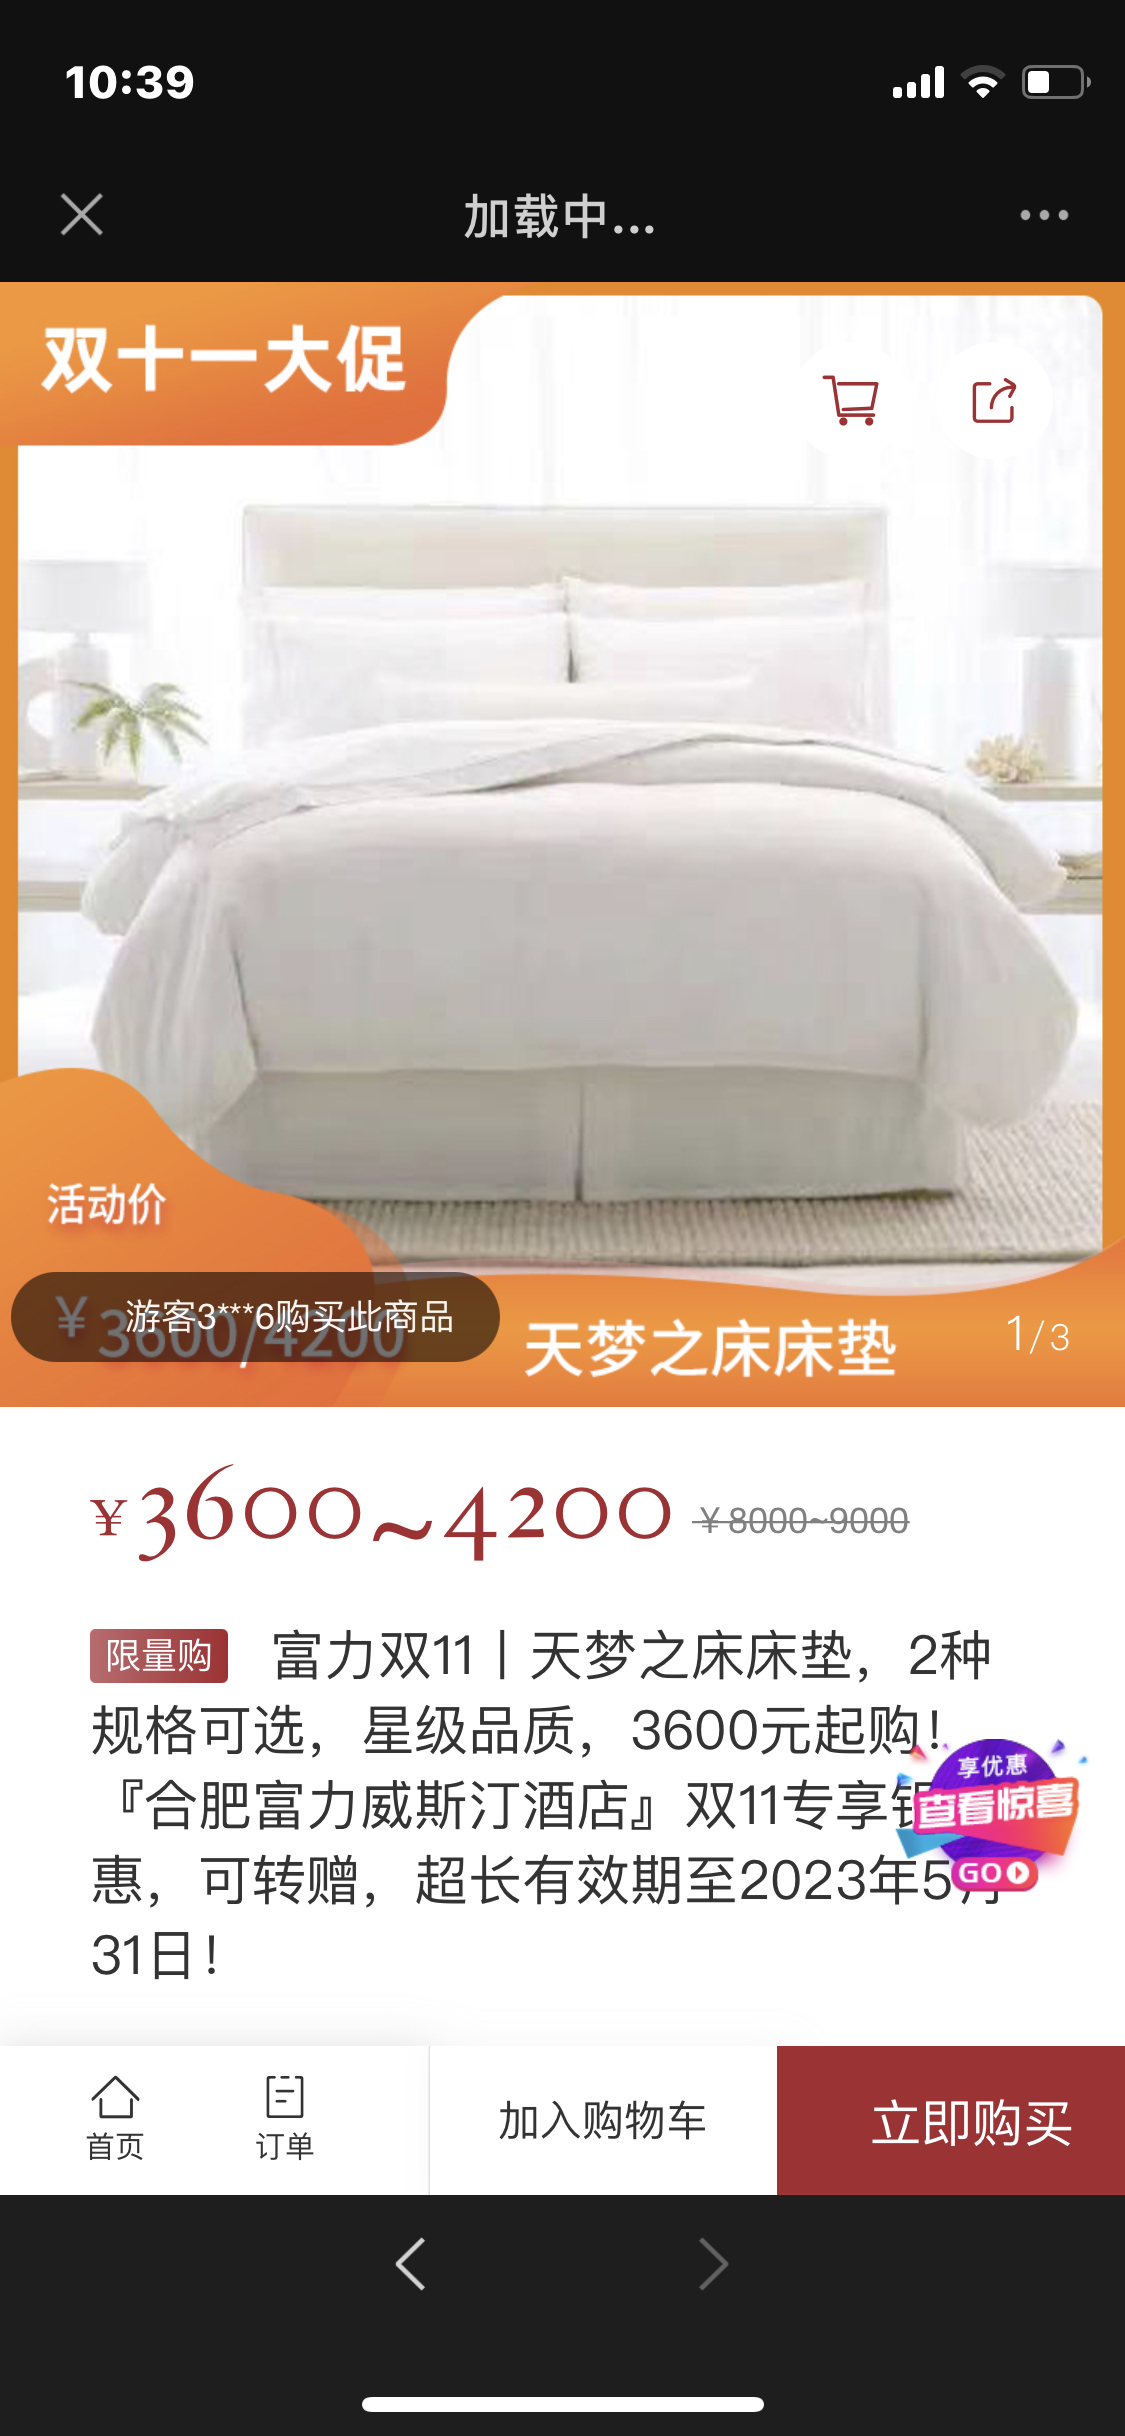 金茂北京威斯汀大饭店夏日家庭欢享：帐篷与天梦之床(图)